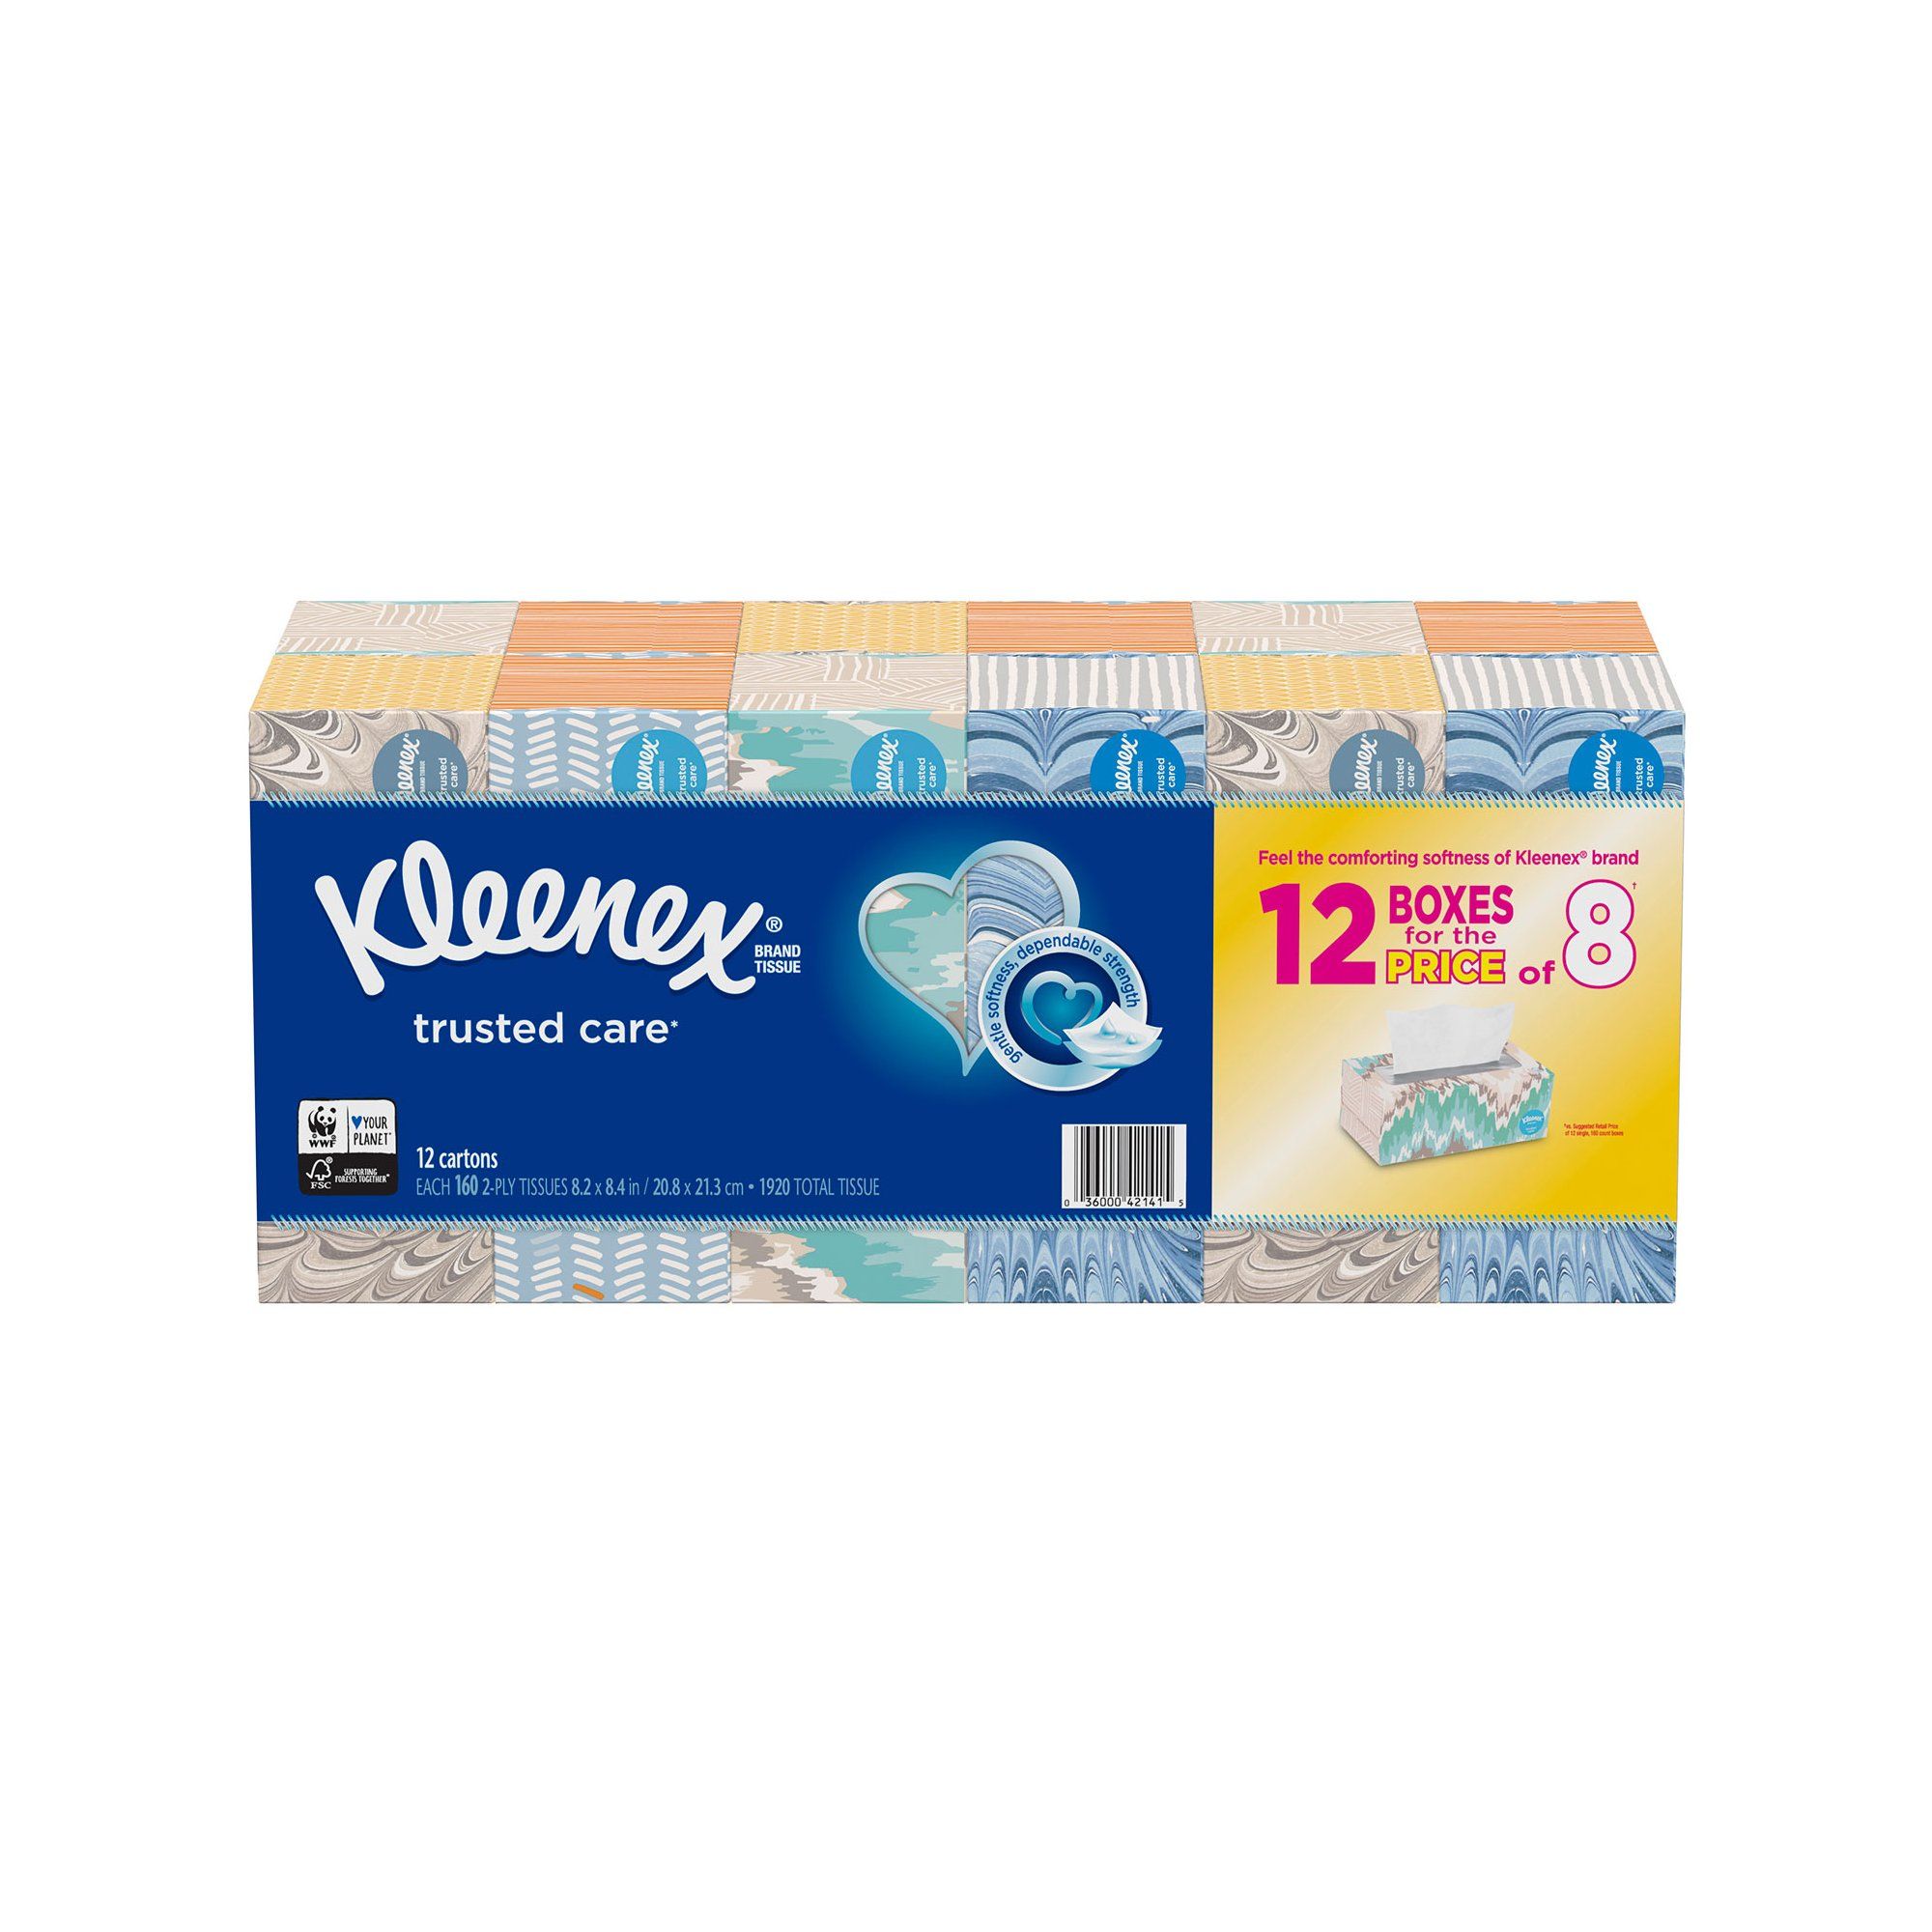 Sunshine reccomend Kleenex facial tissue coupon